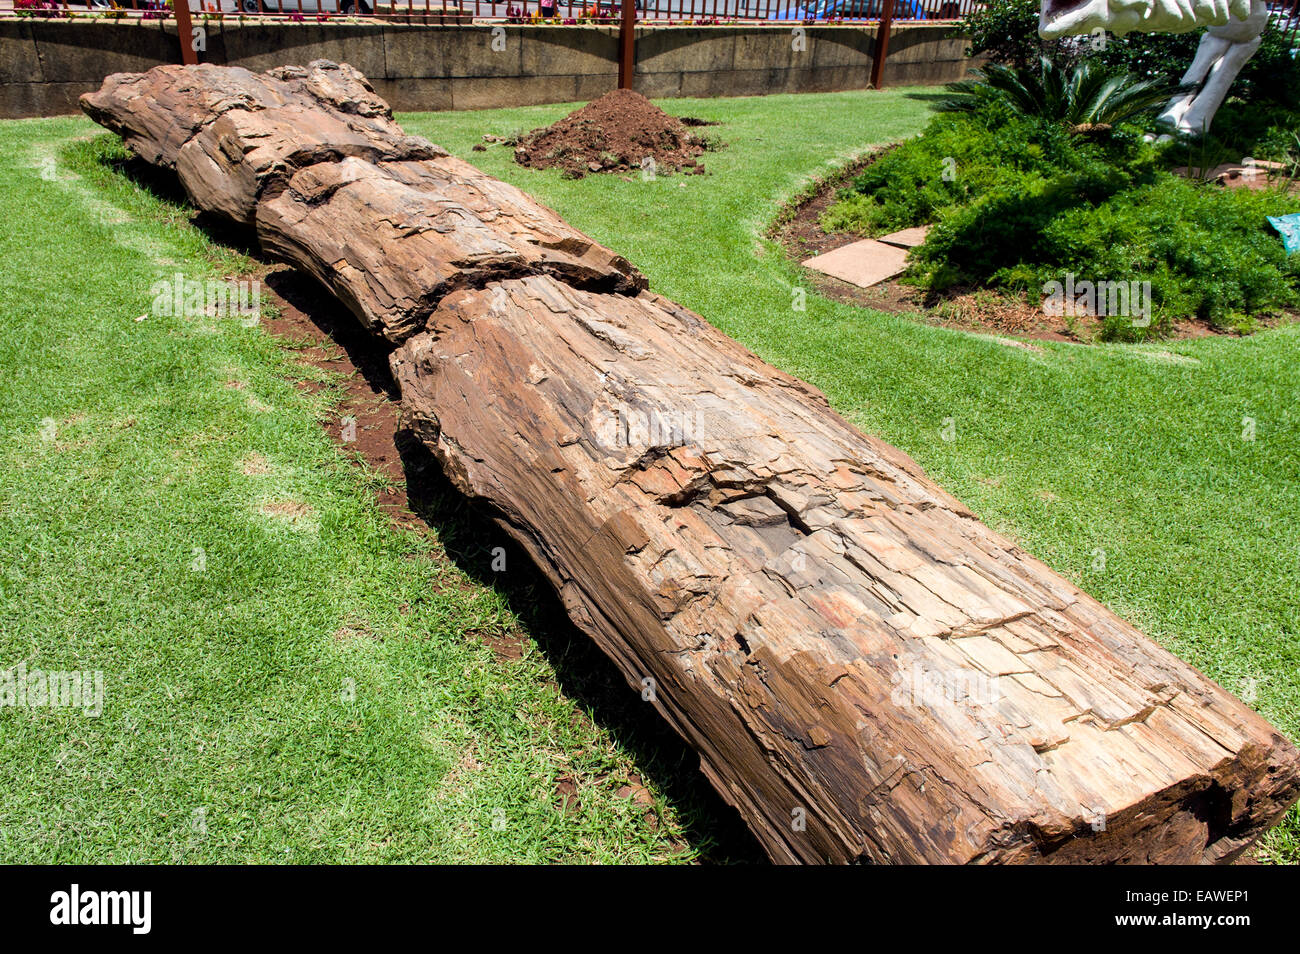 Un tronco de árbol fosilizadas y petrificadas en la entrada a un museo. Foto de stock